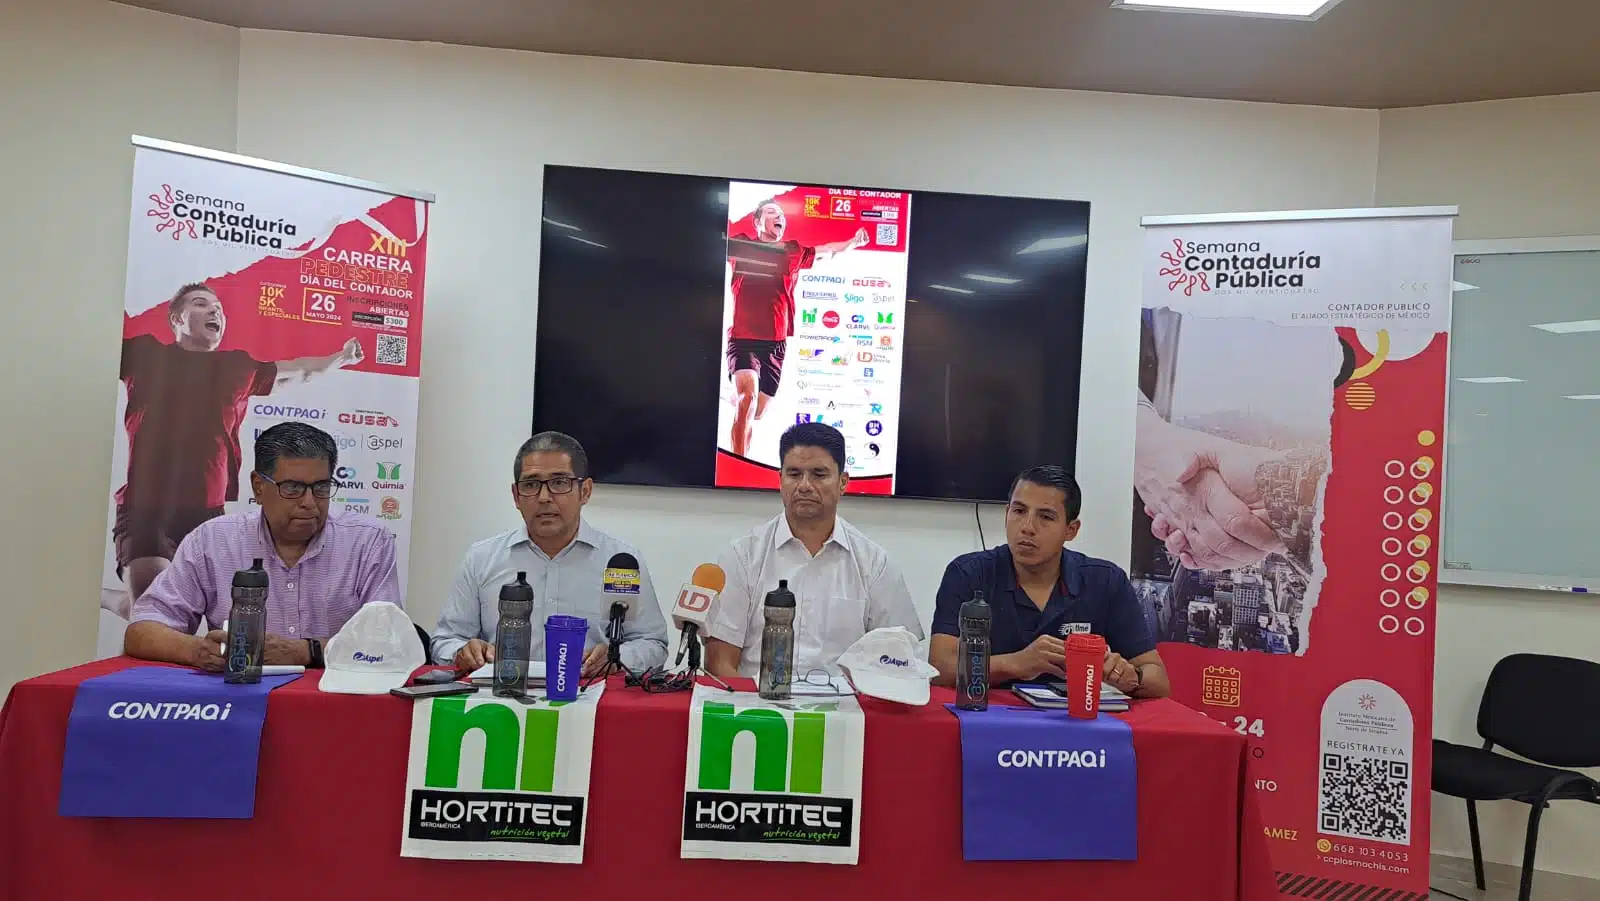 Conferencia de prensa para anunciar la semana de la contaduría publica, en el norte de Sinaloa